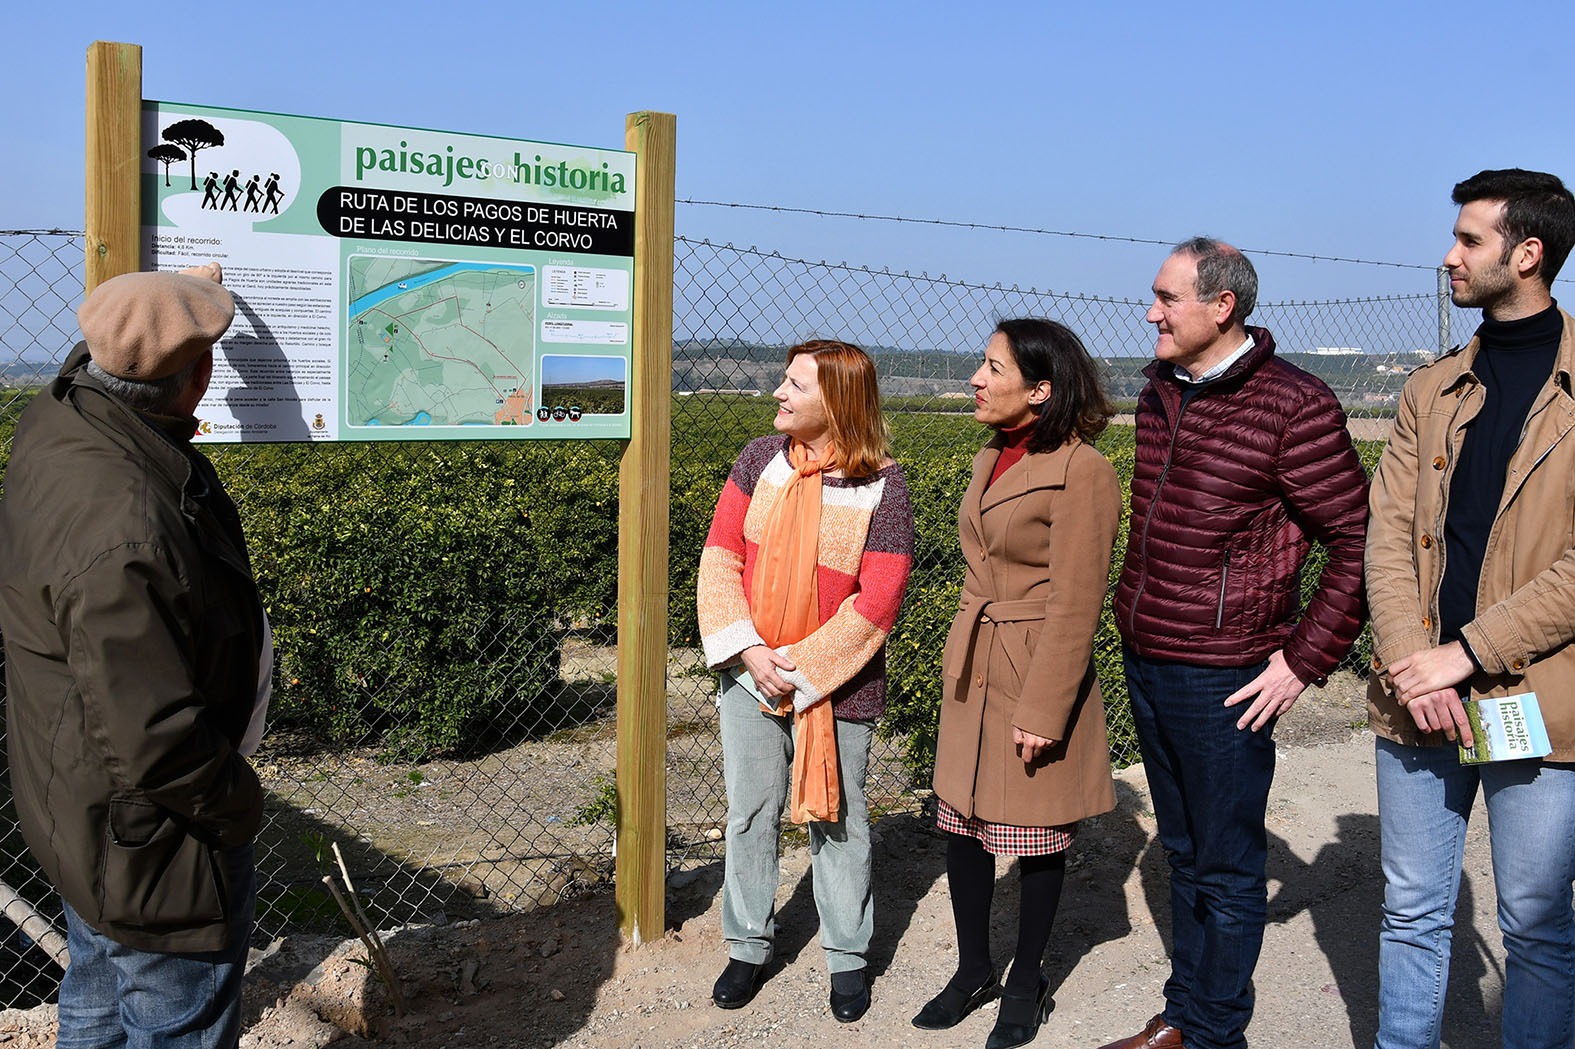 Ayuntamiento y Diputación señalizan una ruta senderista por las huertas de Las Delicias y El Corvo 1